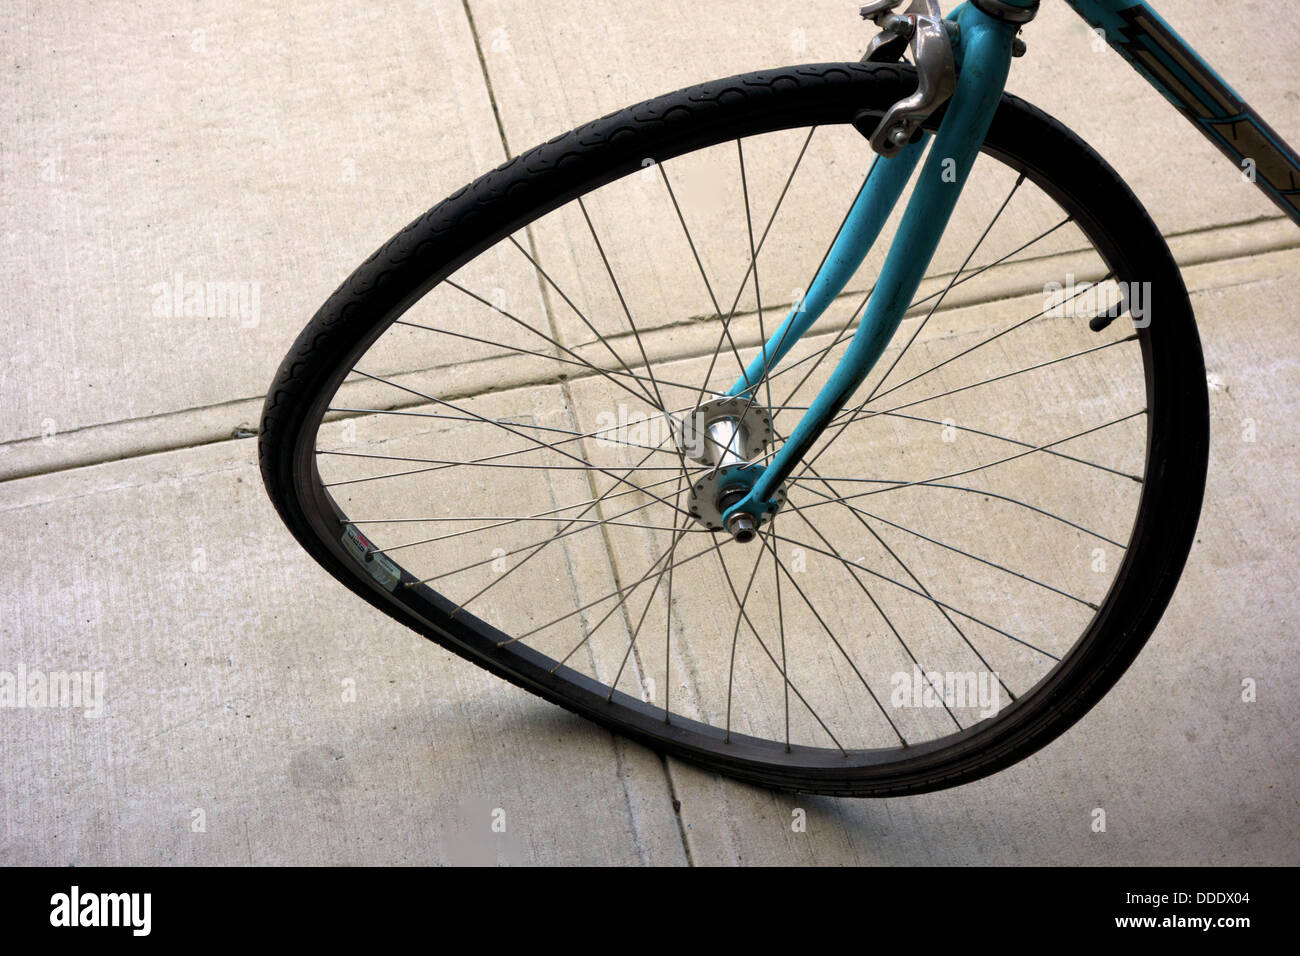 bent-bike-wheel-DDDX04.jpg